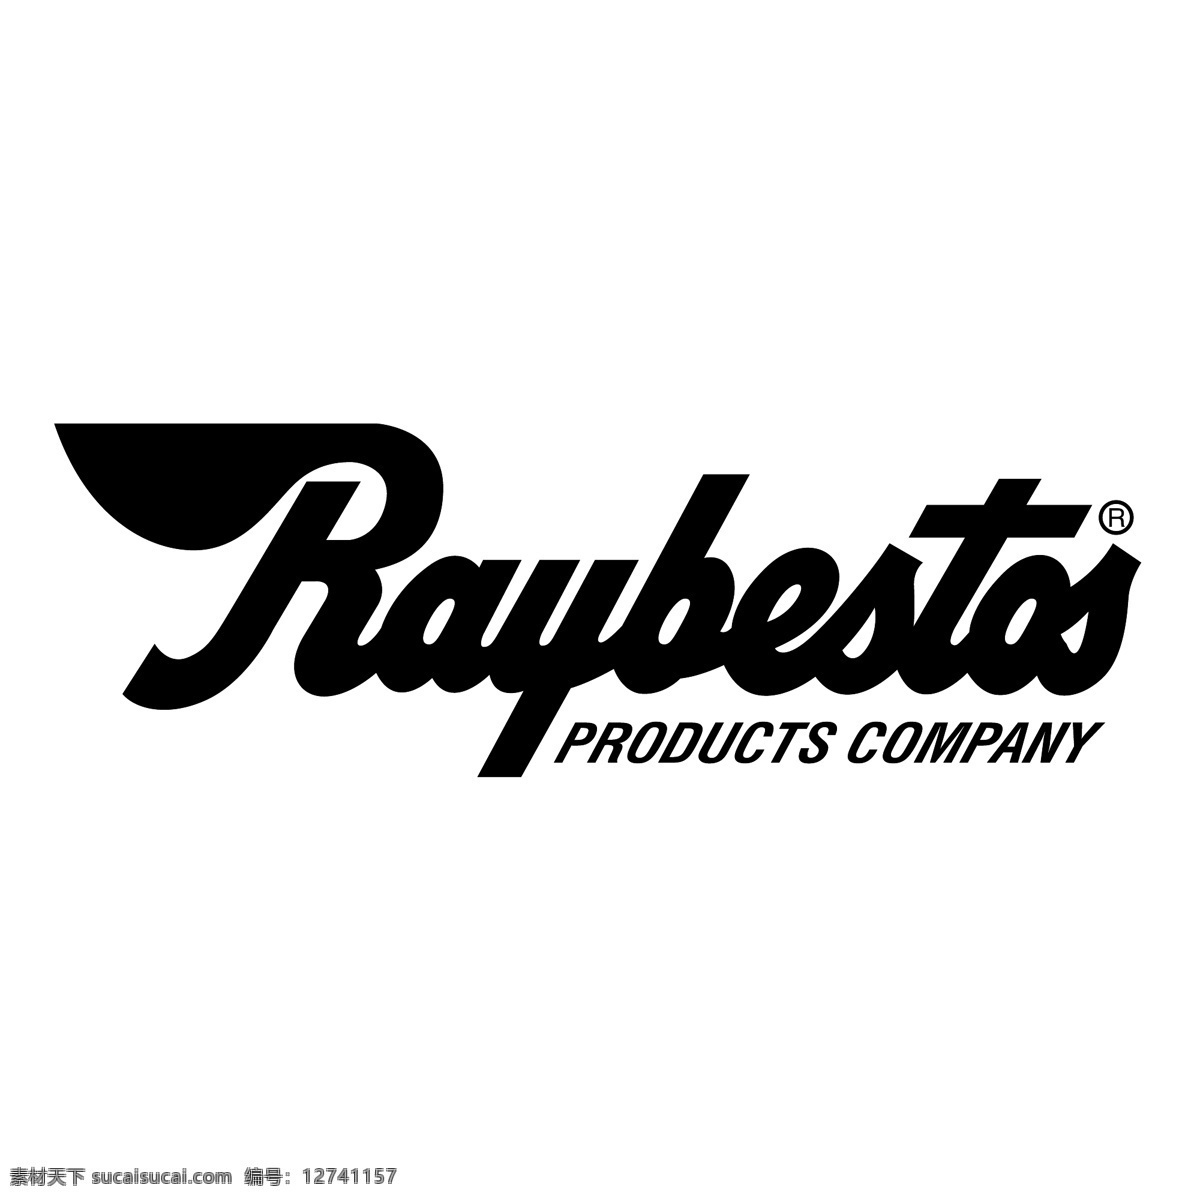 雷 贝斯 托 标识 公司 免费 品牌 品牌标识 商标 矢量标志下载 免费矢量标识 矢量 psd源文件 logo设计